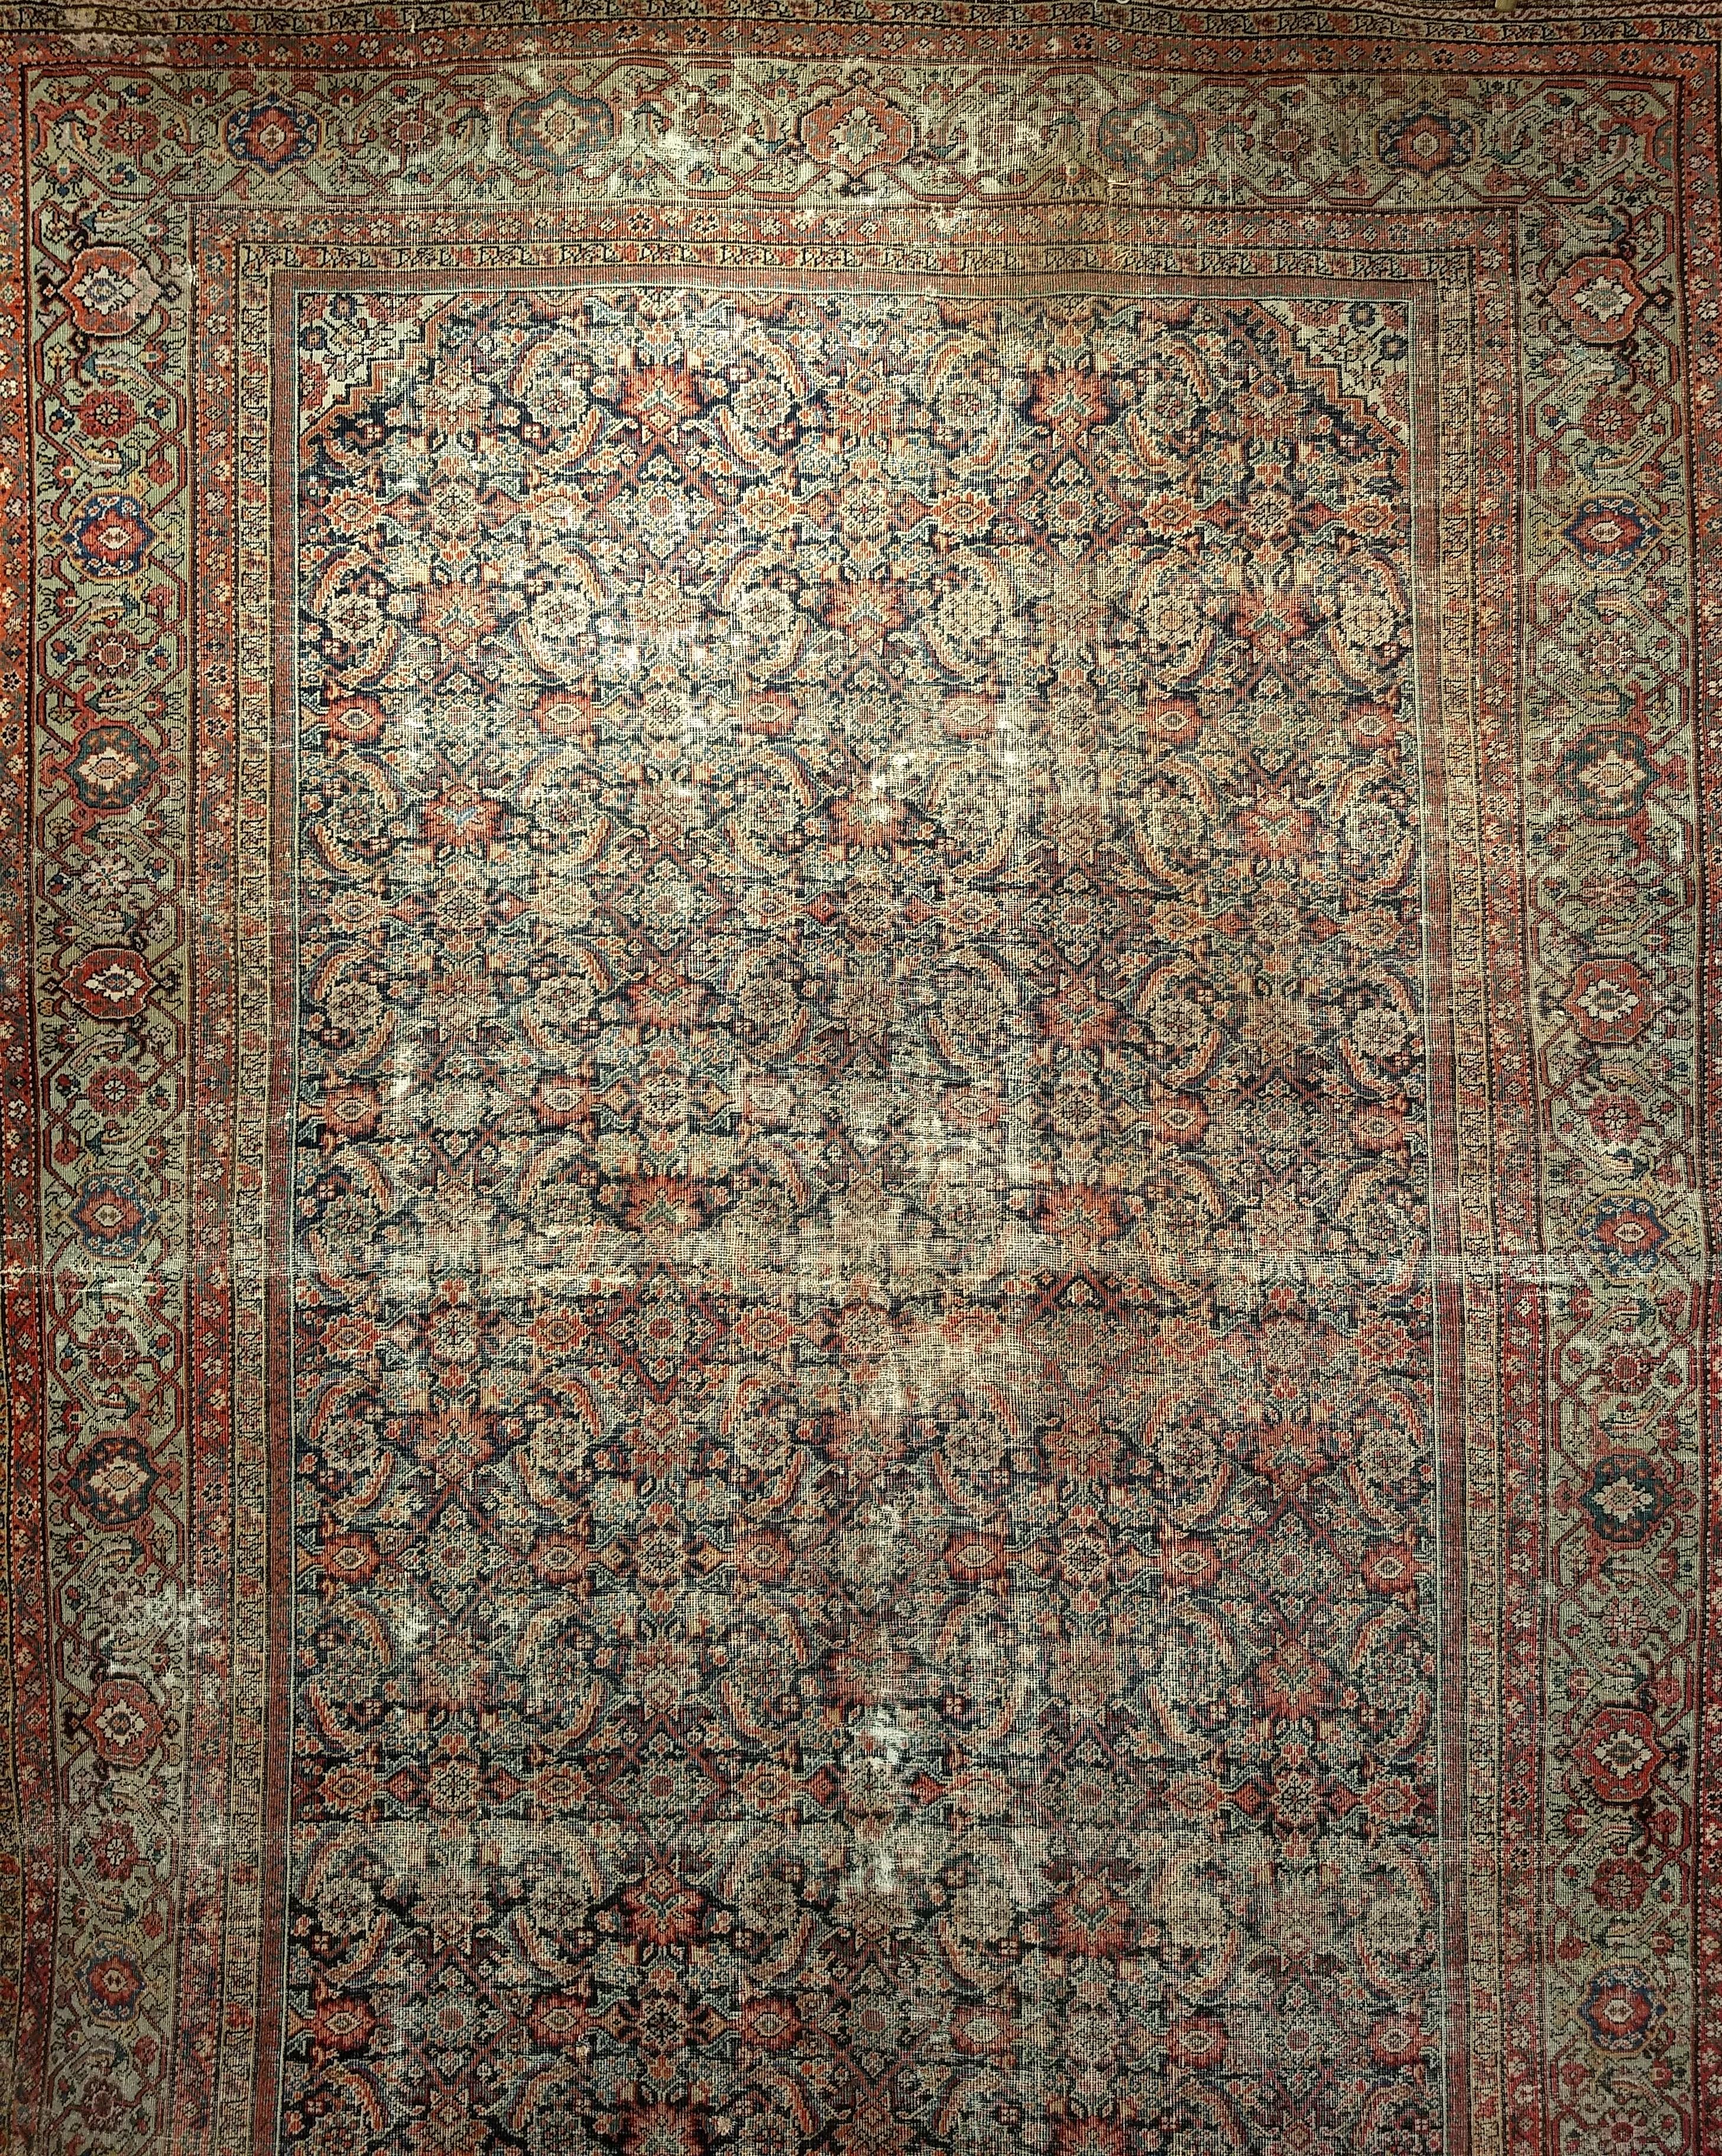 Persischer Farahan des 19. Jahrhunderts in Marineblau, Grün, Burgunderrot und Allover Herati-Muster